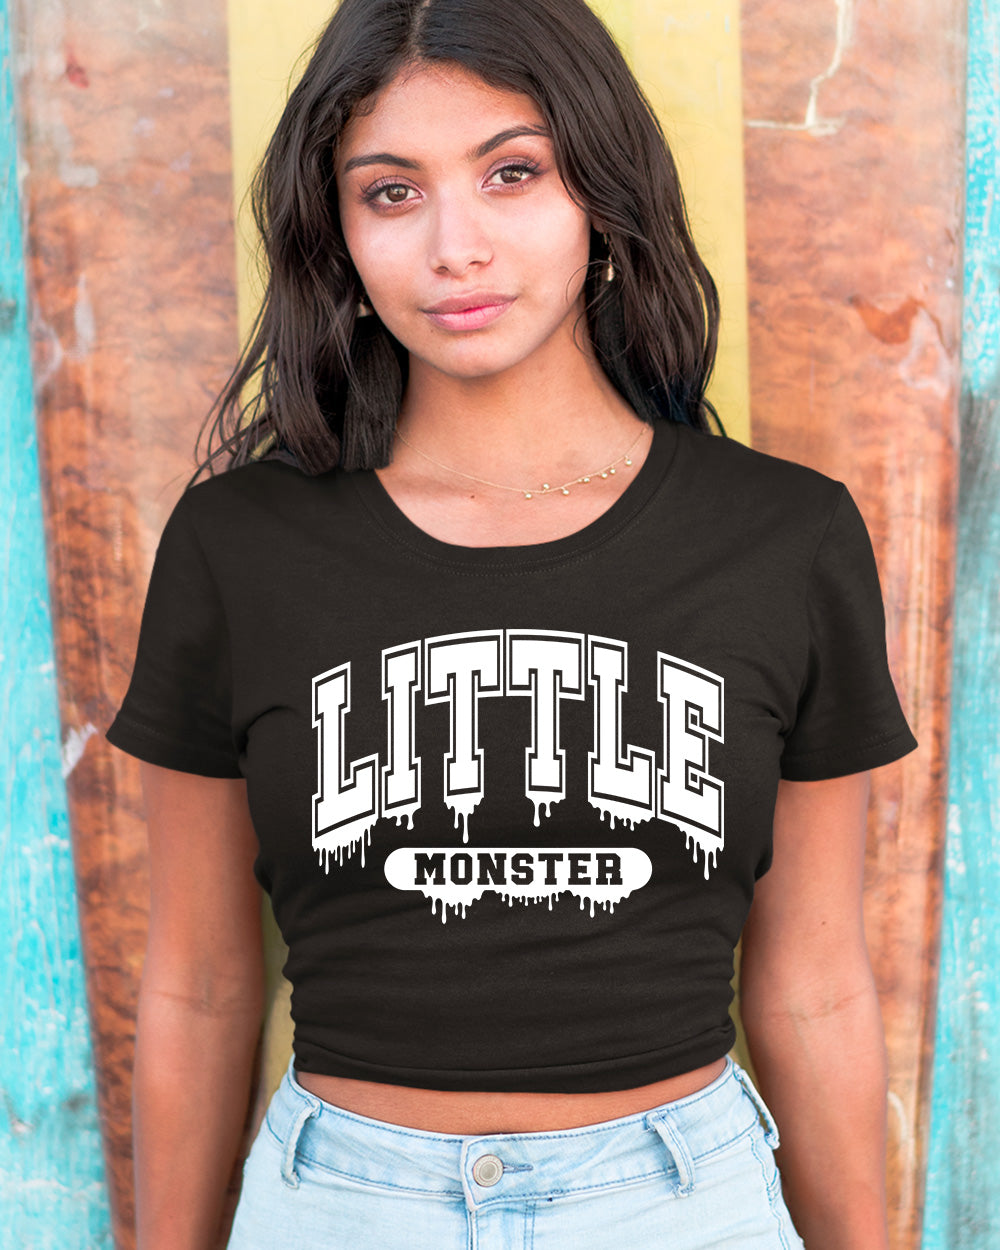 Little Monster Baby crop Top tees